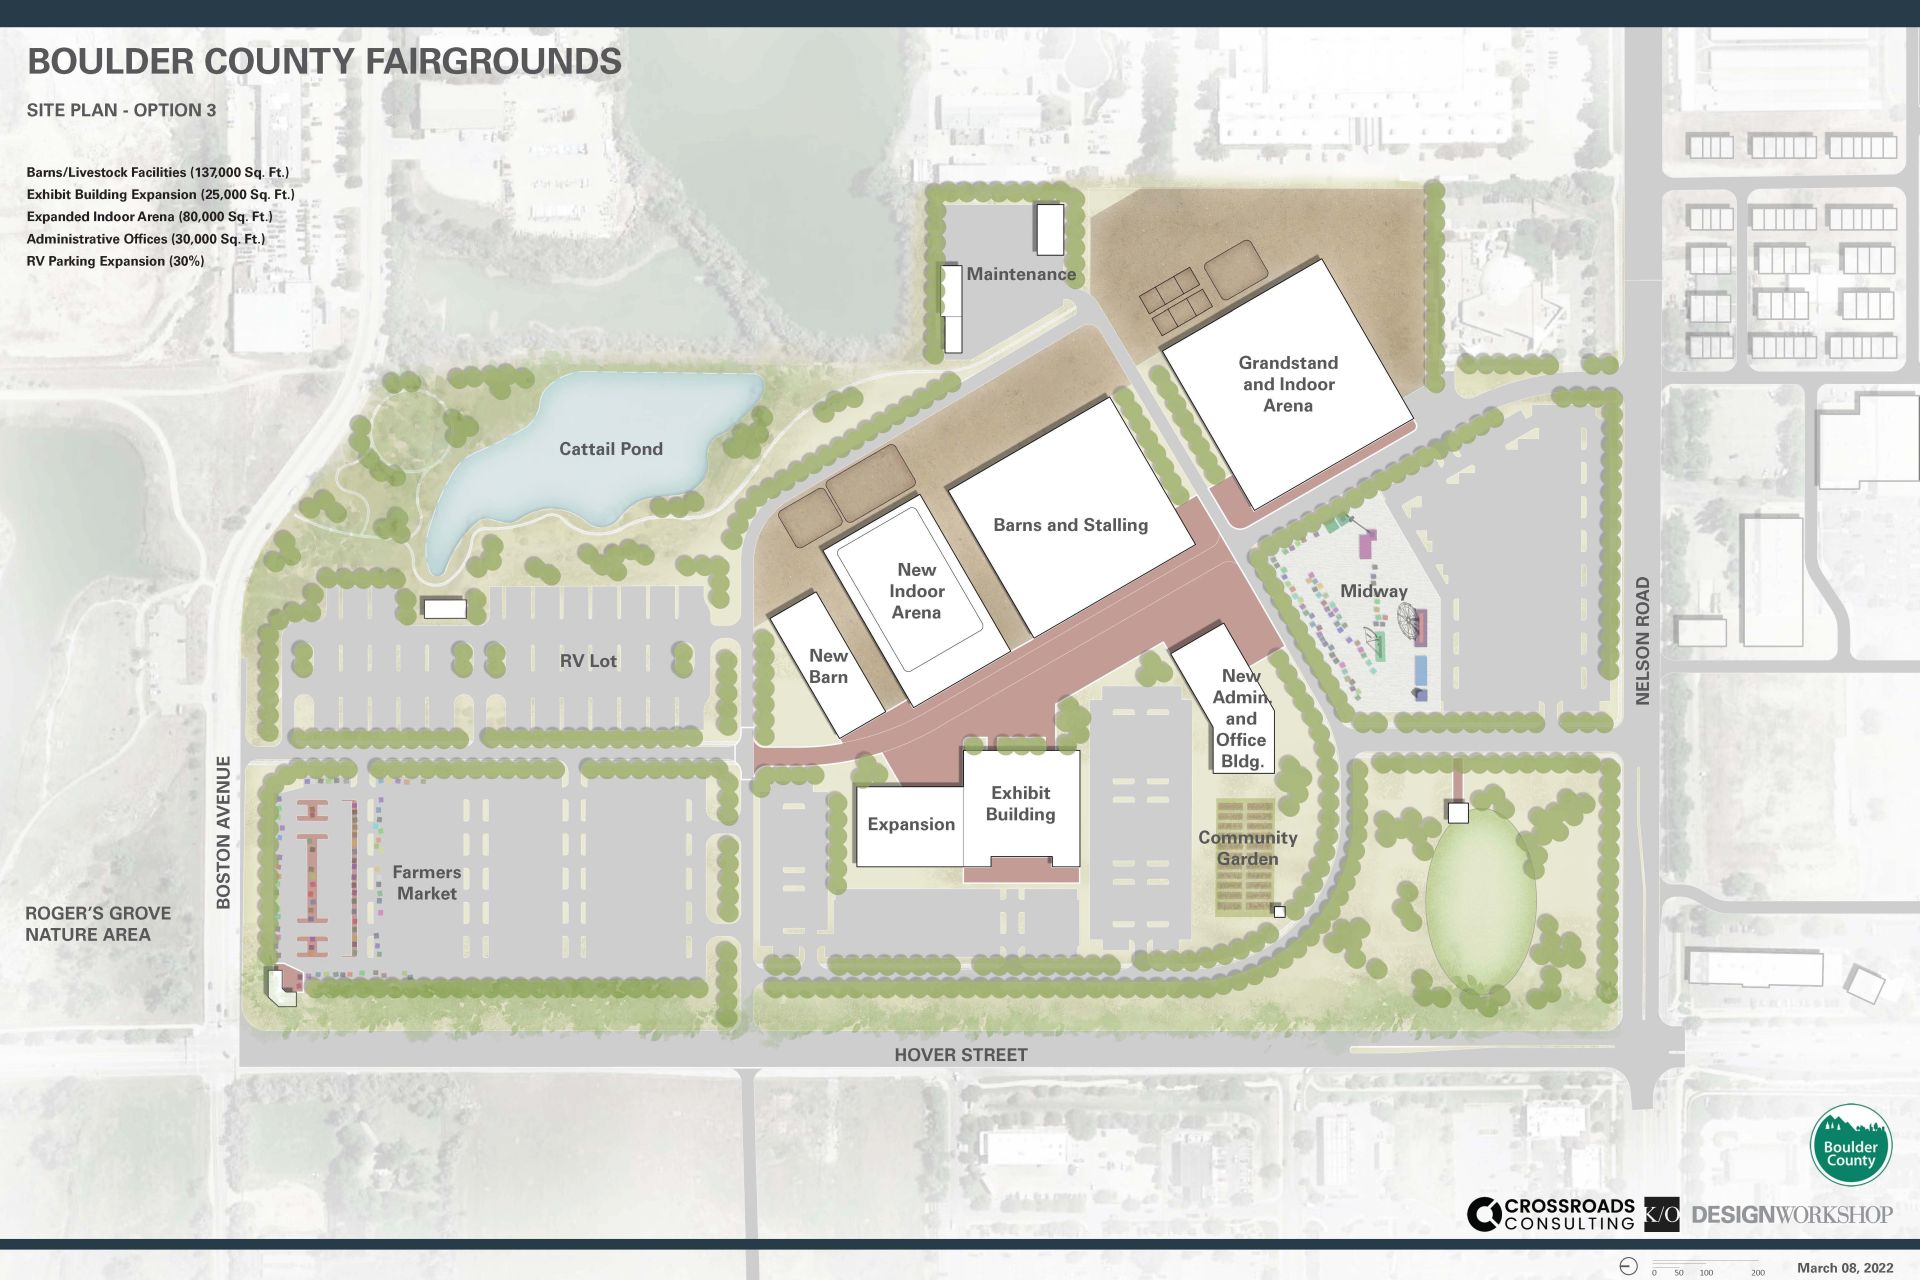 Fairgrounds Conceptual Site Plan: Option 3